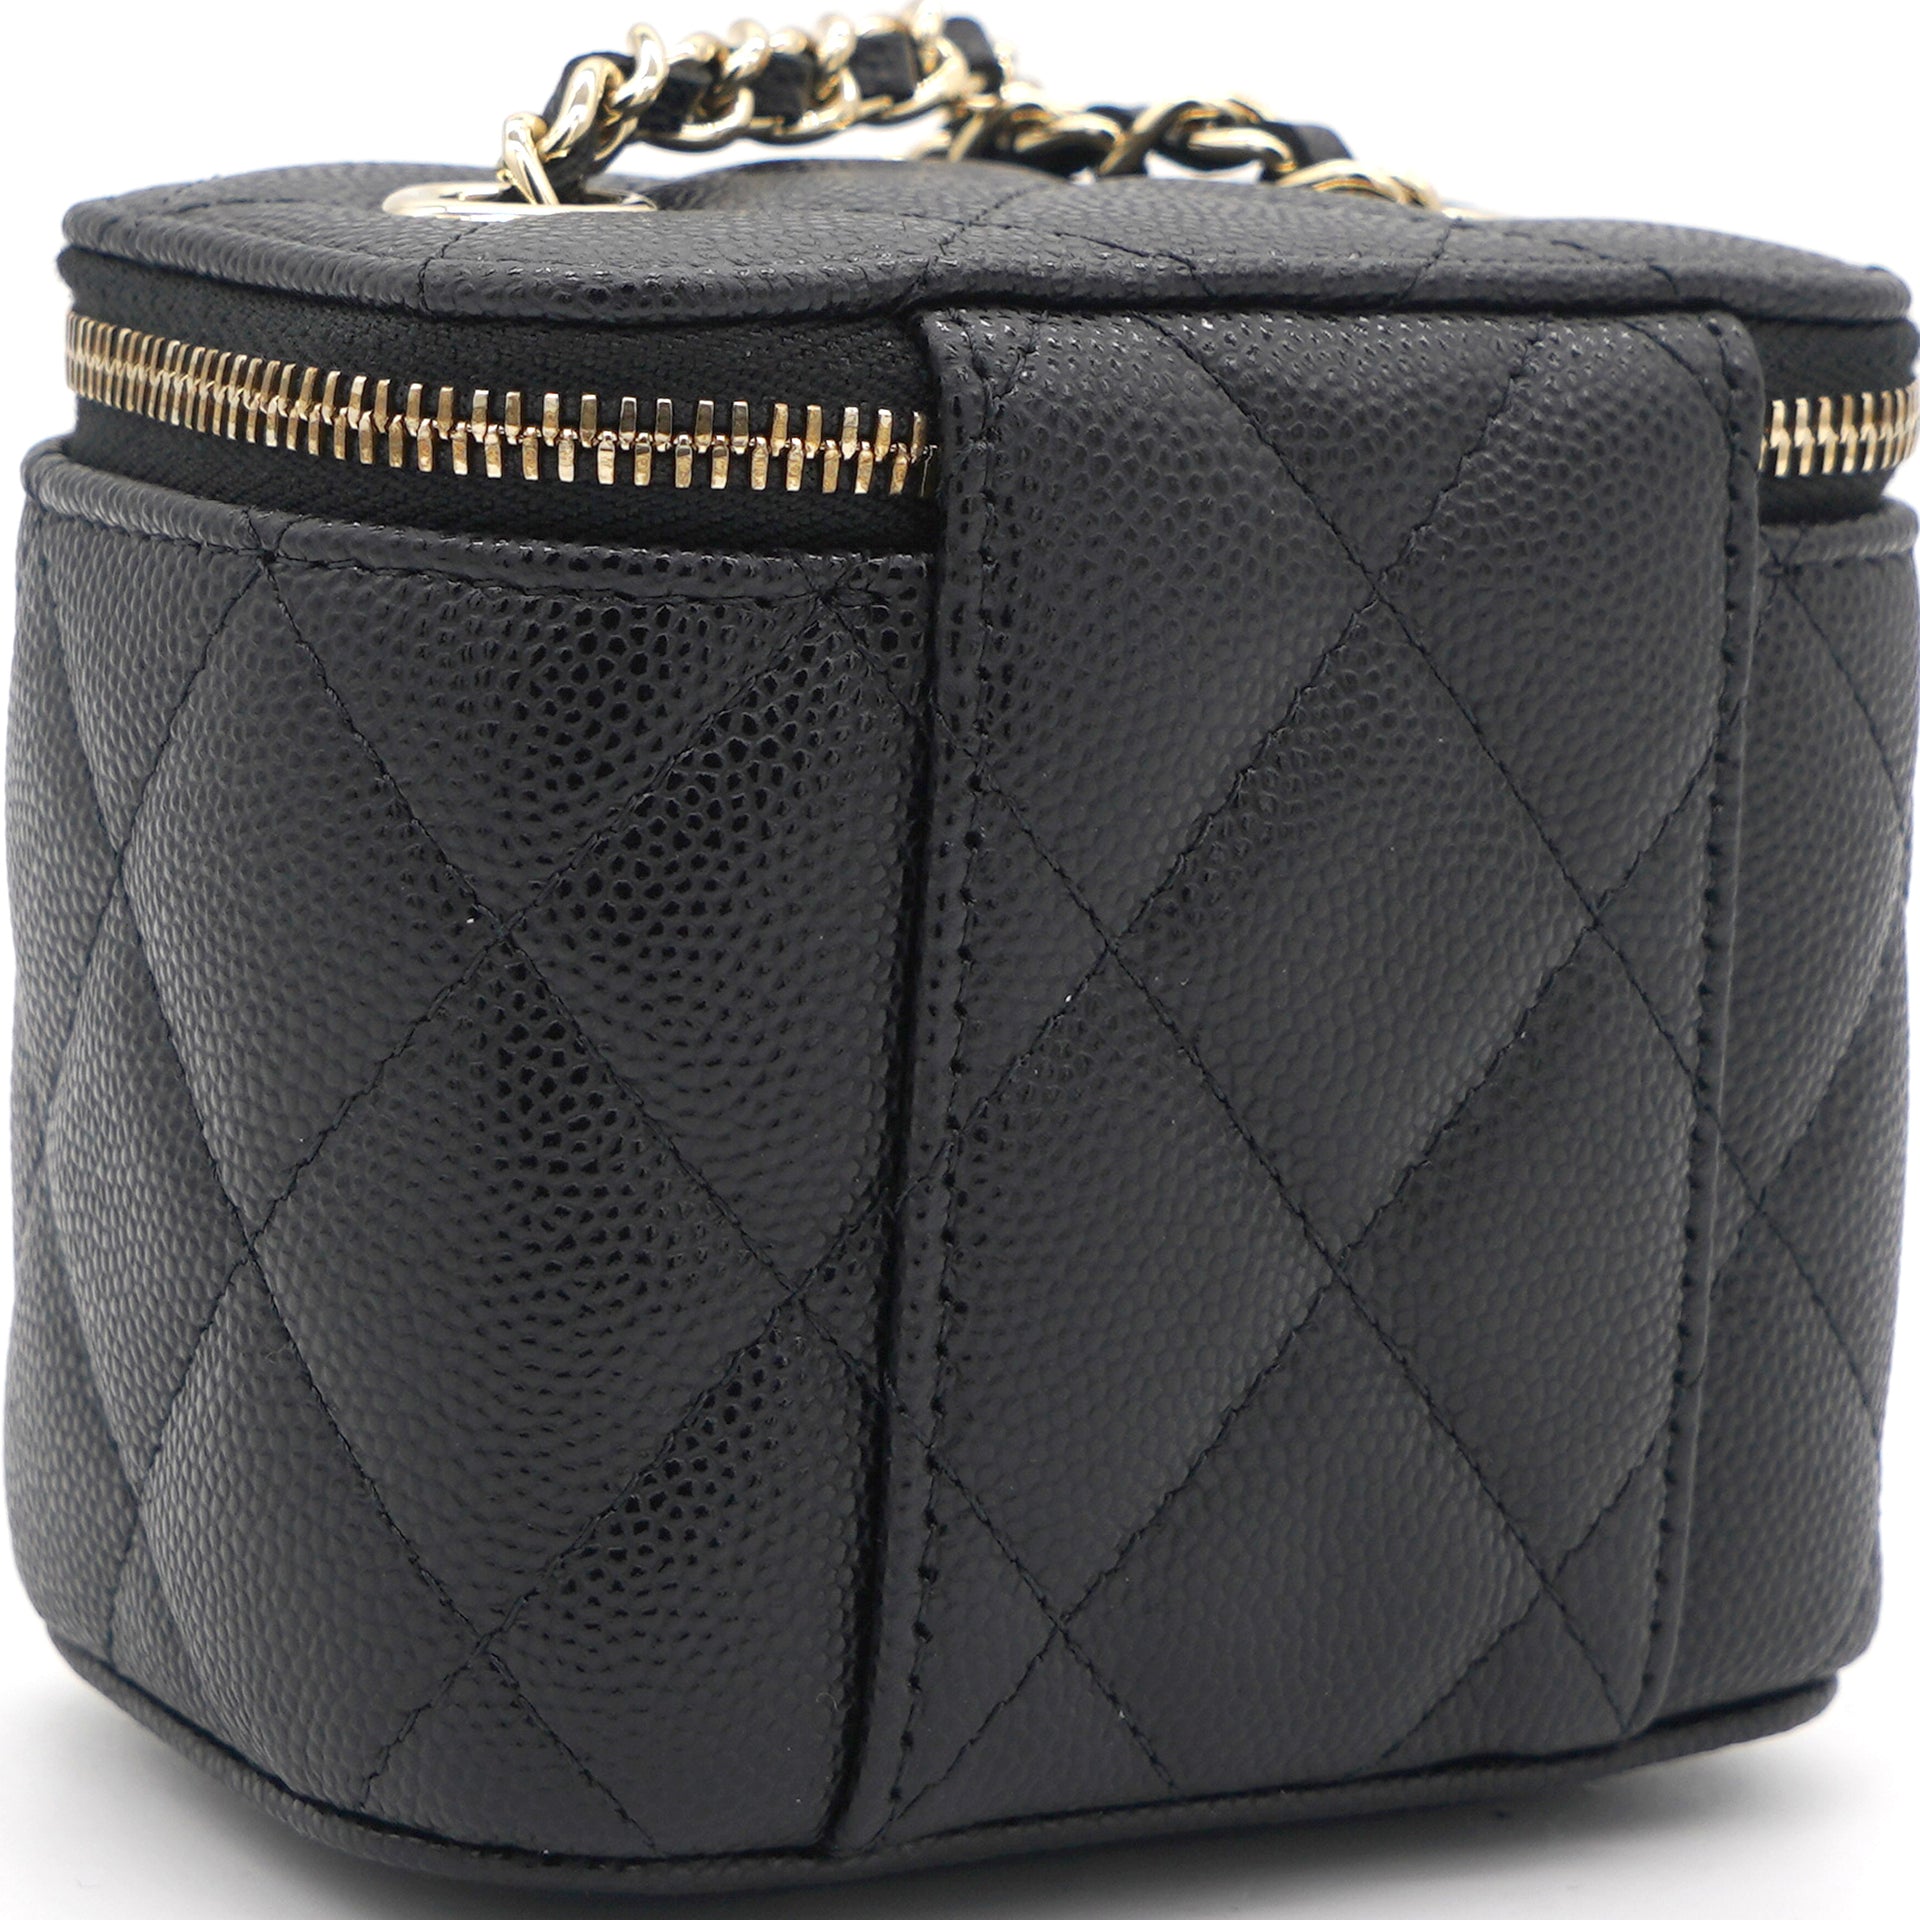 Túi cặp lồng chanel mini hàng cao cấp 3400k httpLienFashionvn HỆ   lien fashion